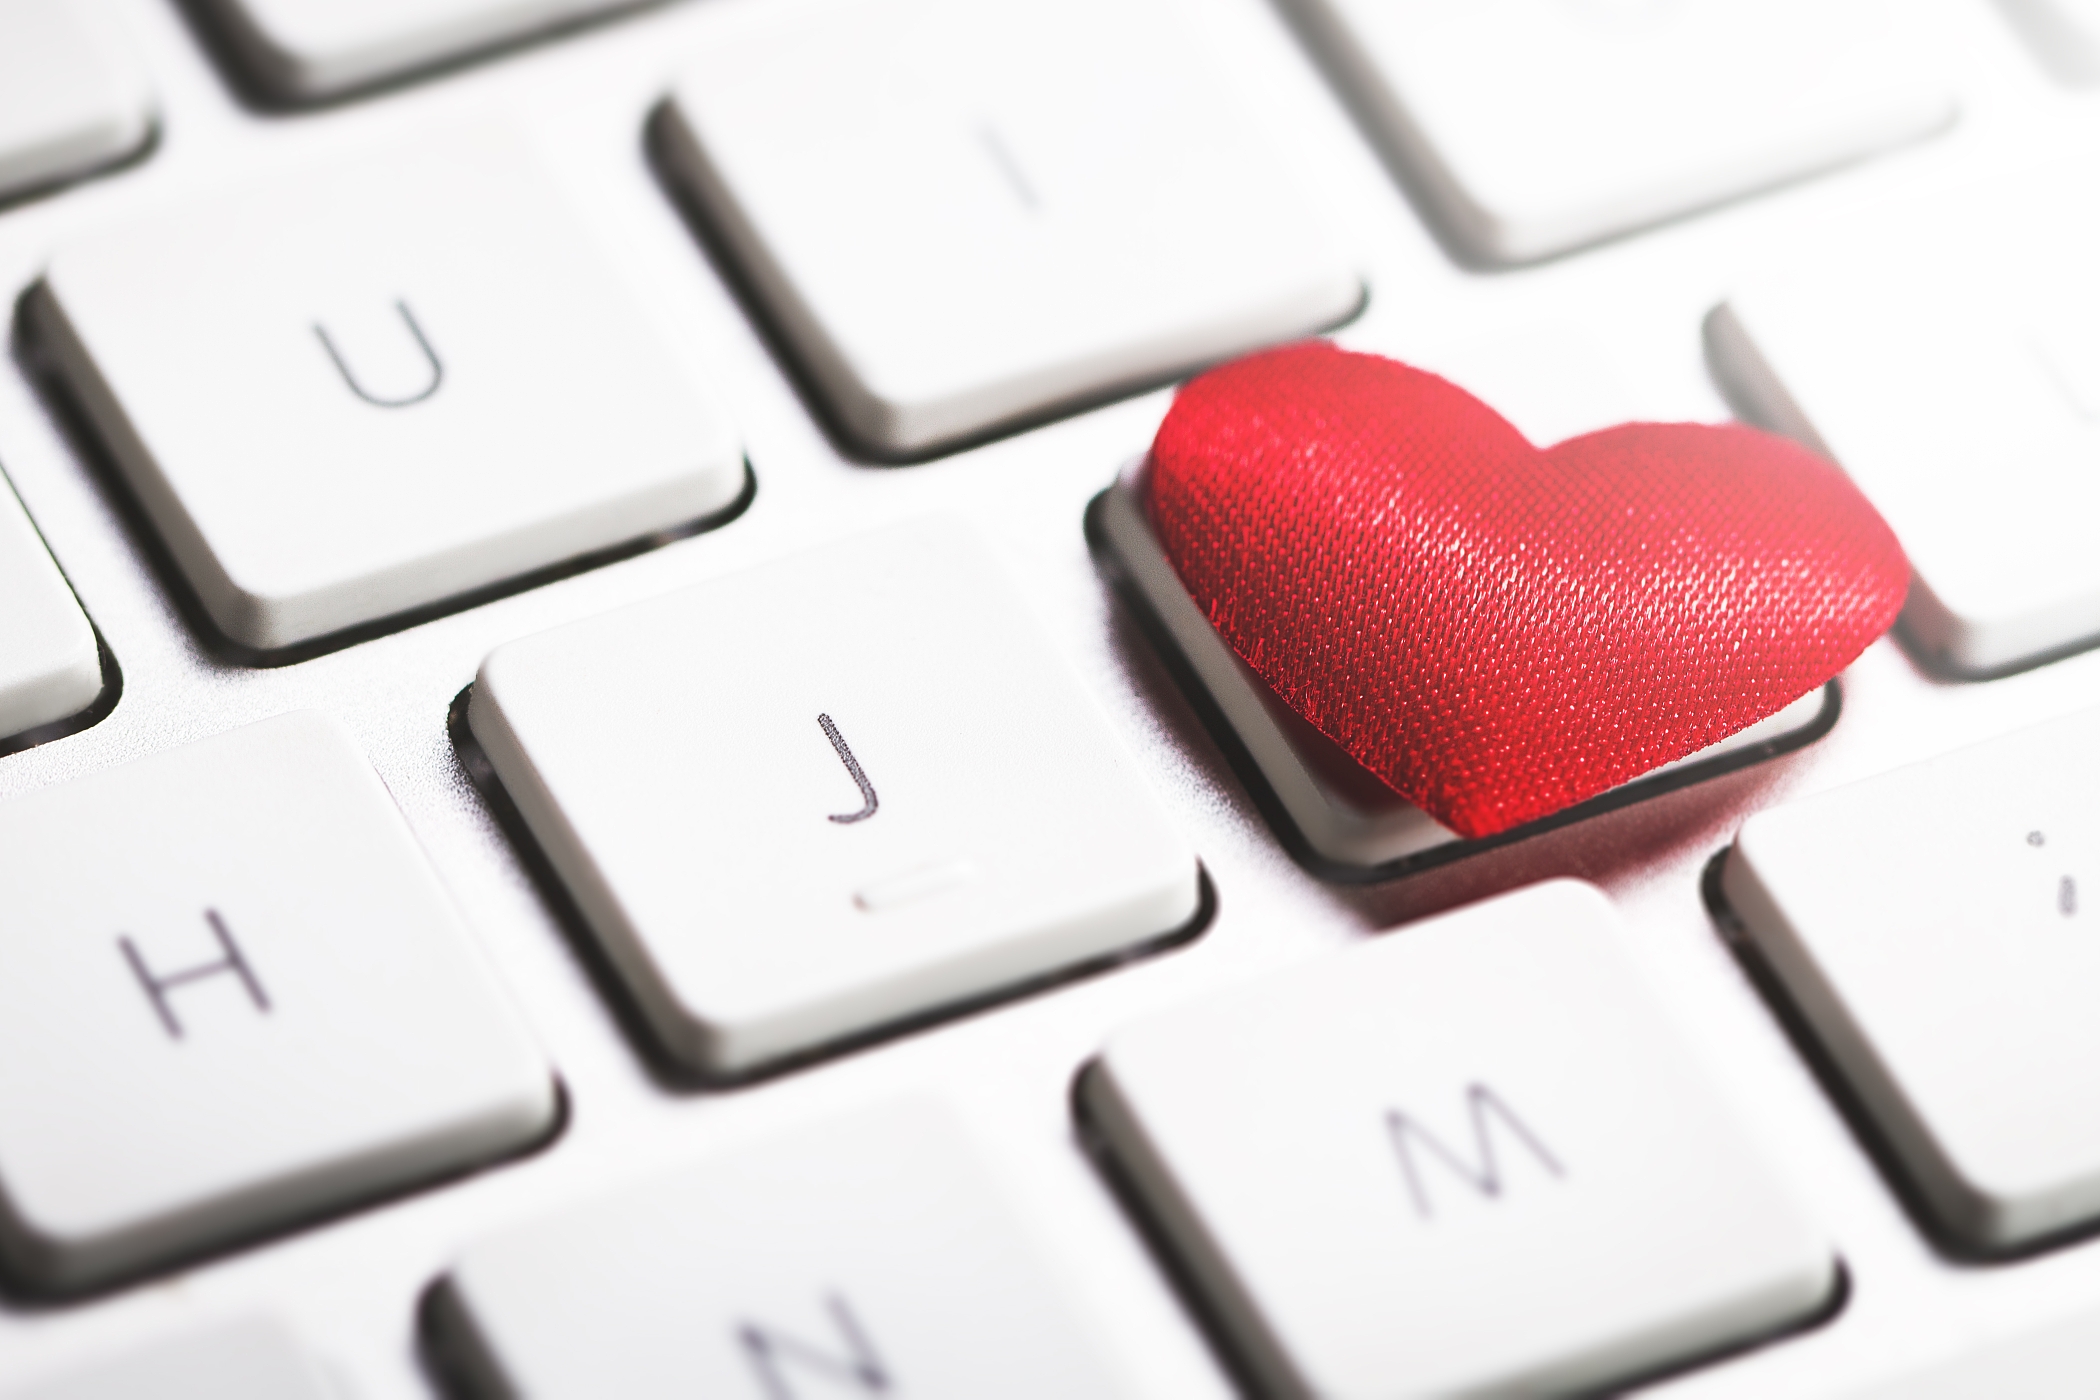 láska přes internet